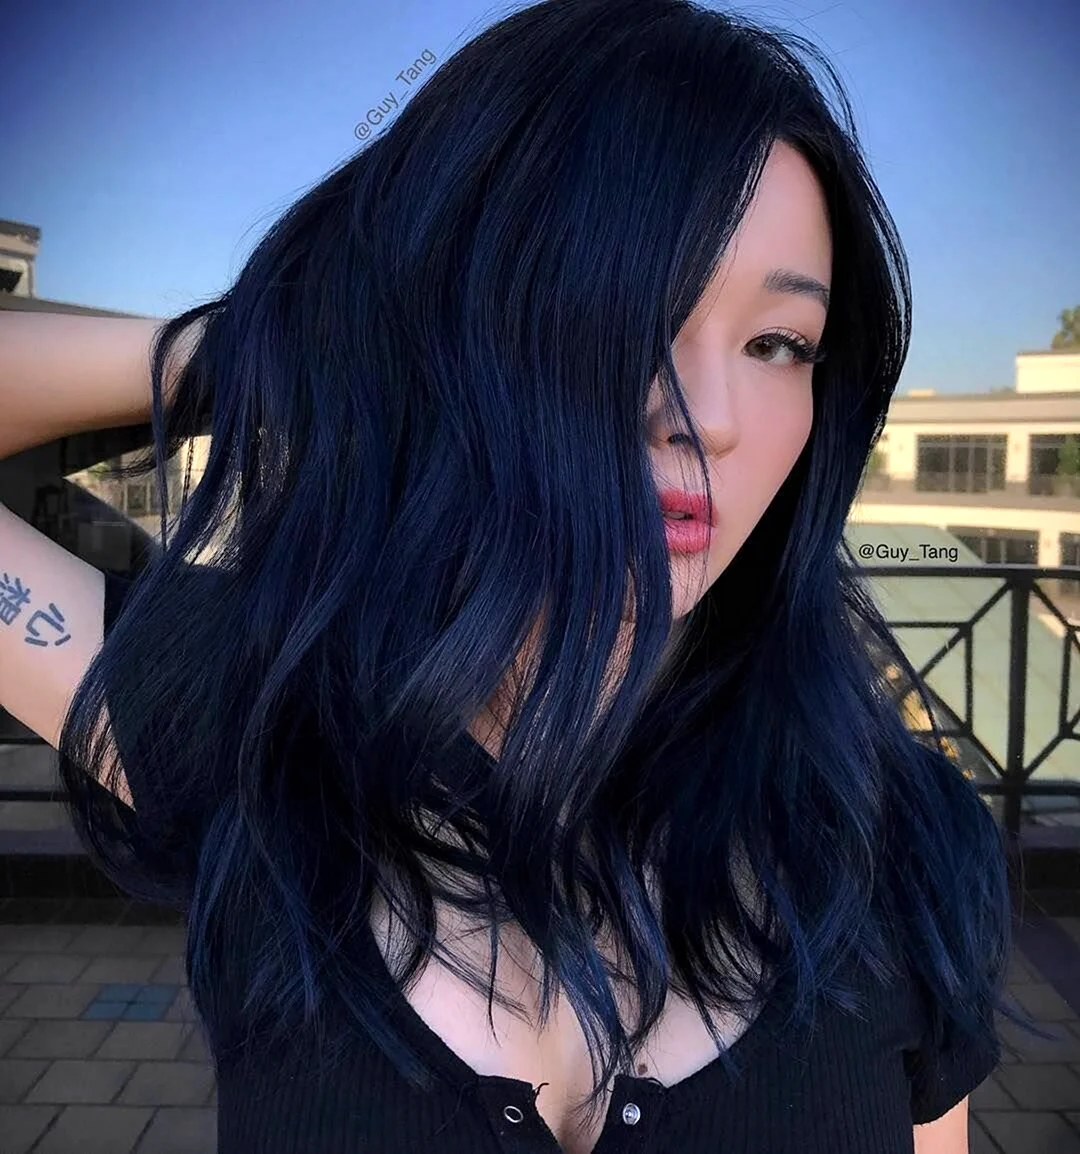 Синий черный цвет волос